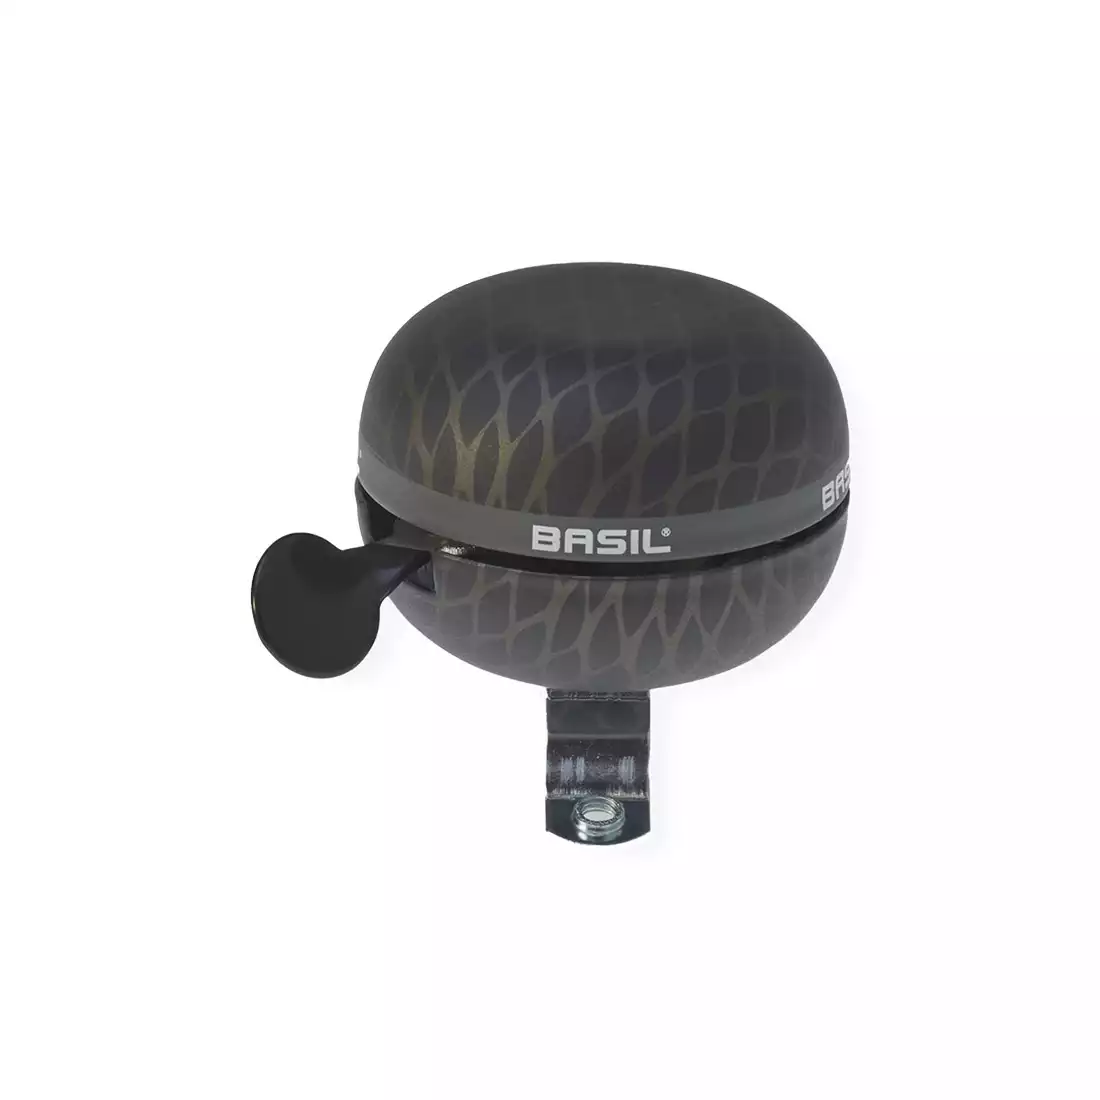 BASIL NOIR BELL Fahrradklingel 60mm, black metallic